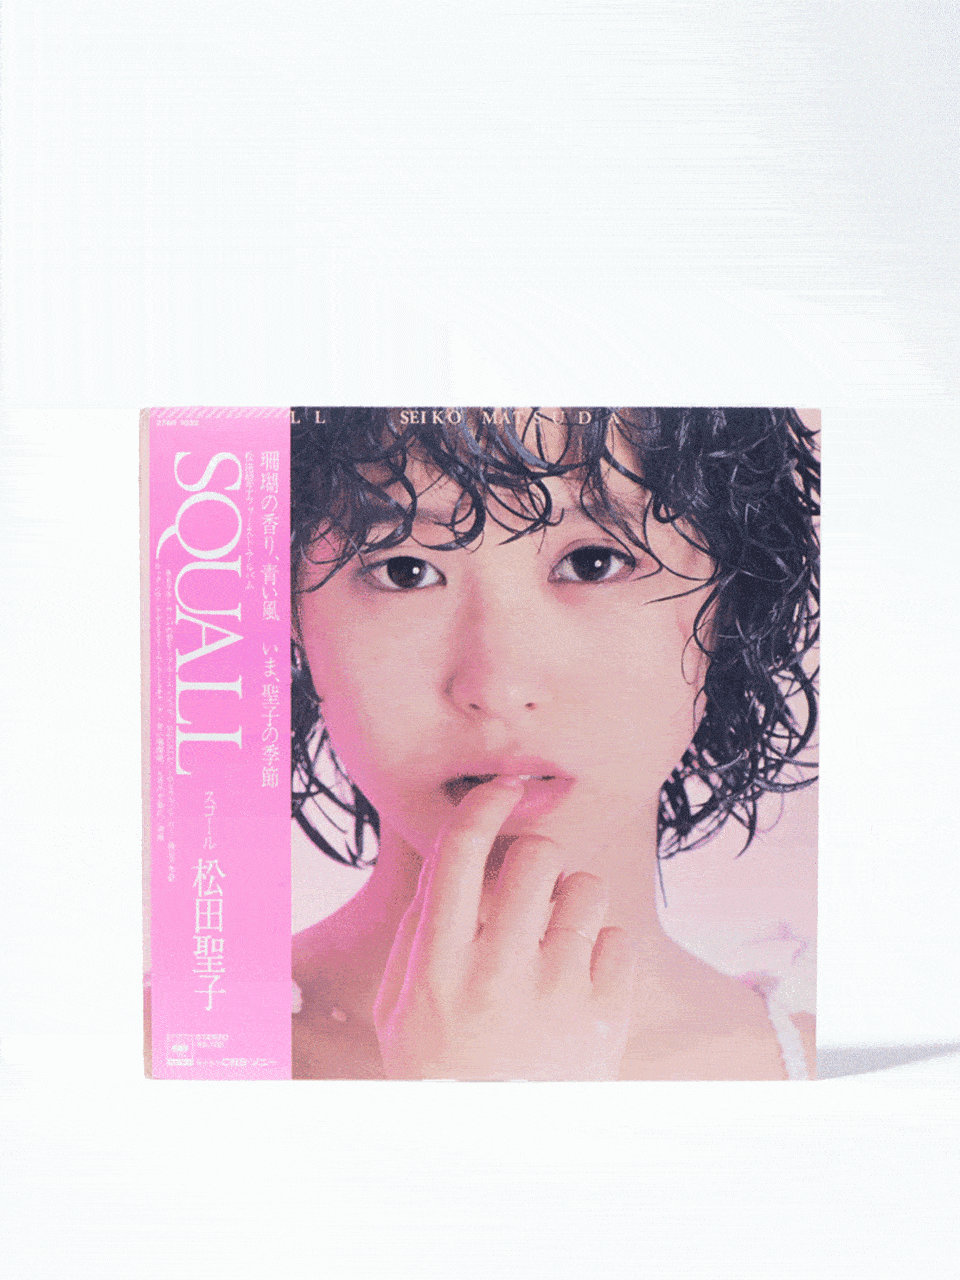 松田聖子 SACD アルバム11作品セット 美品 - 邦楽